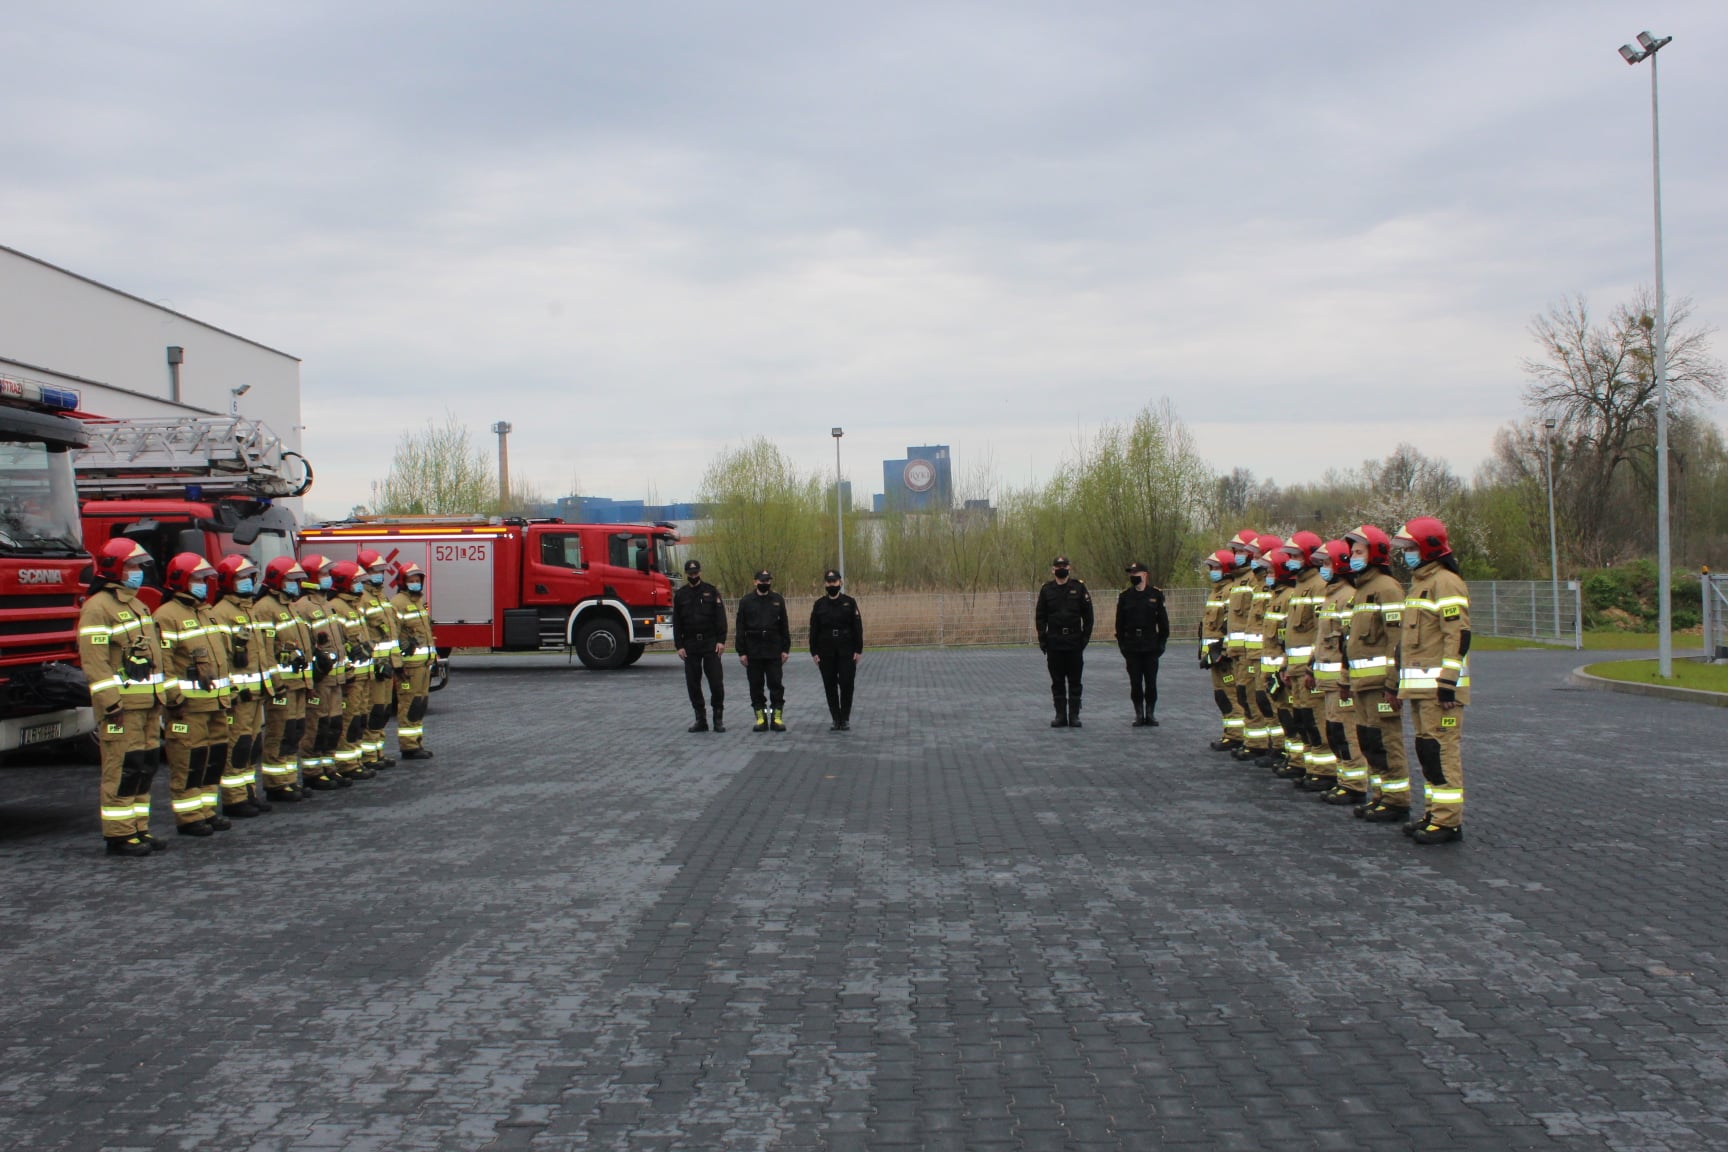 Strażacy z Ryk wyprowadzili się z centrum miasta. Nowa siedziba została oficjalnie otwarta (zdjęcia)